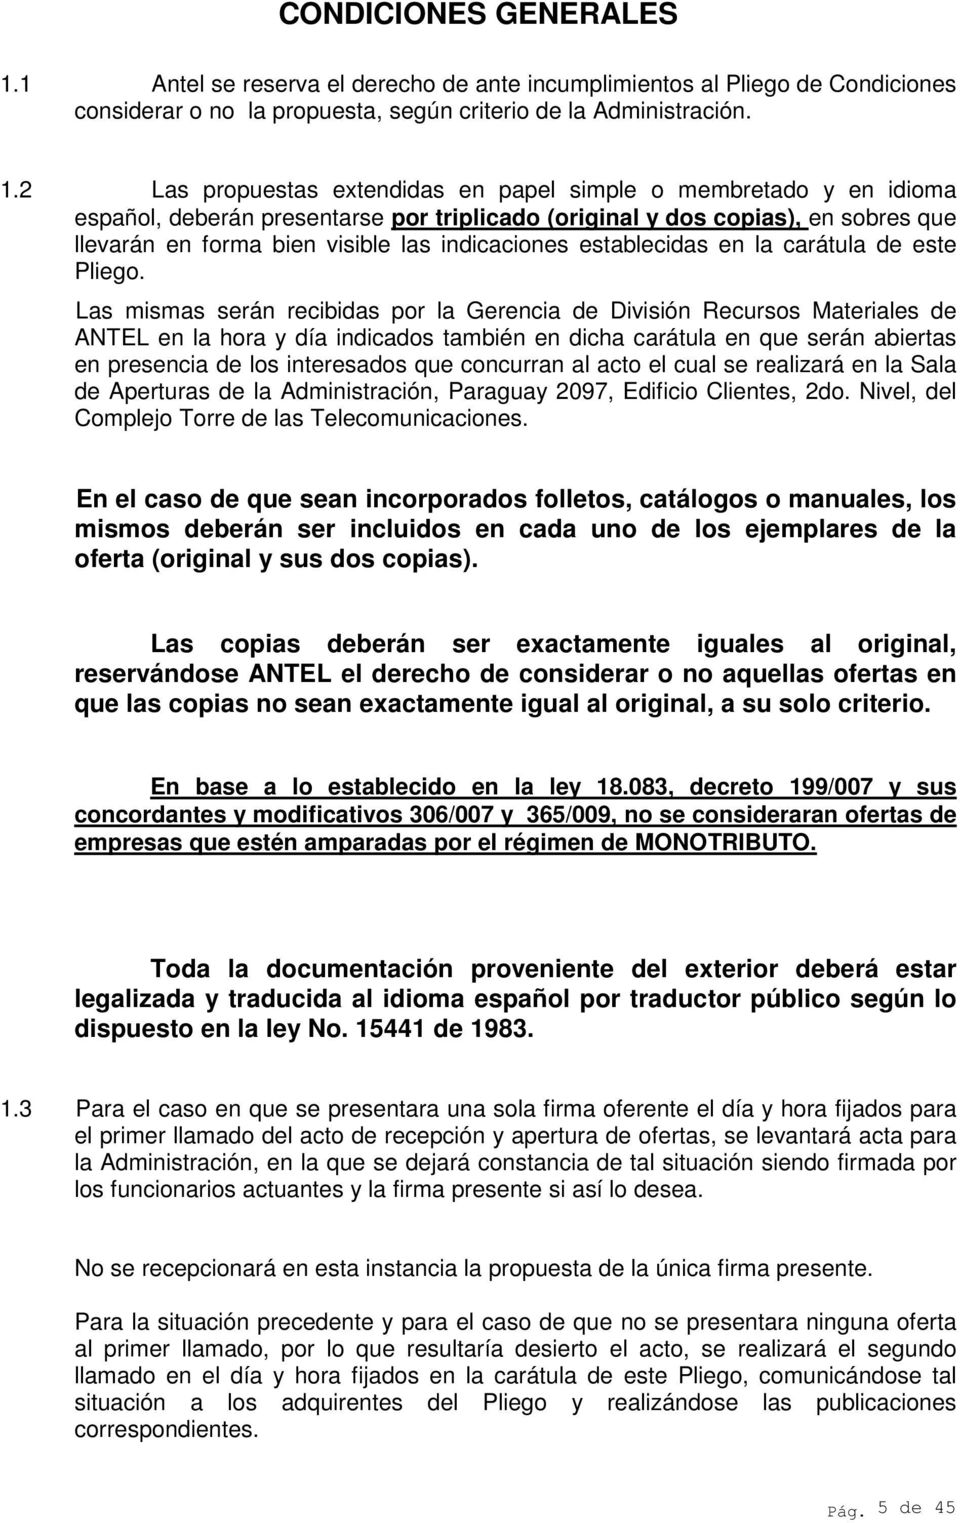 2 Las propuestas extendidas en papel simple o membretado y en idioma español, deberán presentarse por triplicado (original y dos copias), en sobres que llevarán en forma bien visible las indicaciones